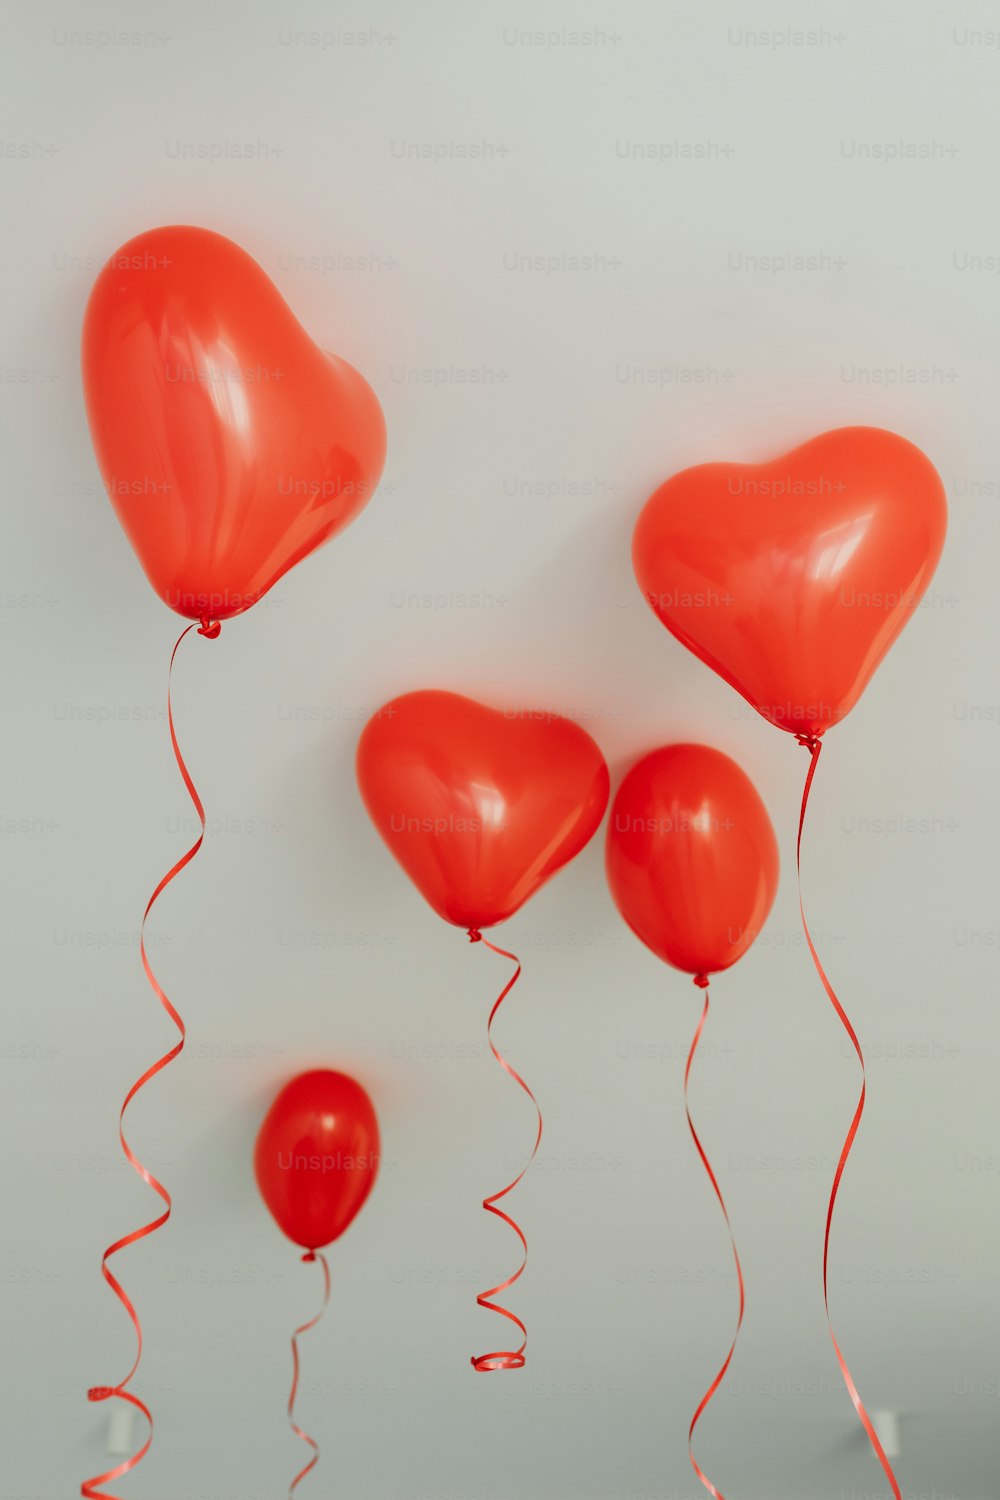 Un groupe de ballons rouges flottant dans les airs